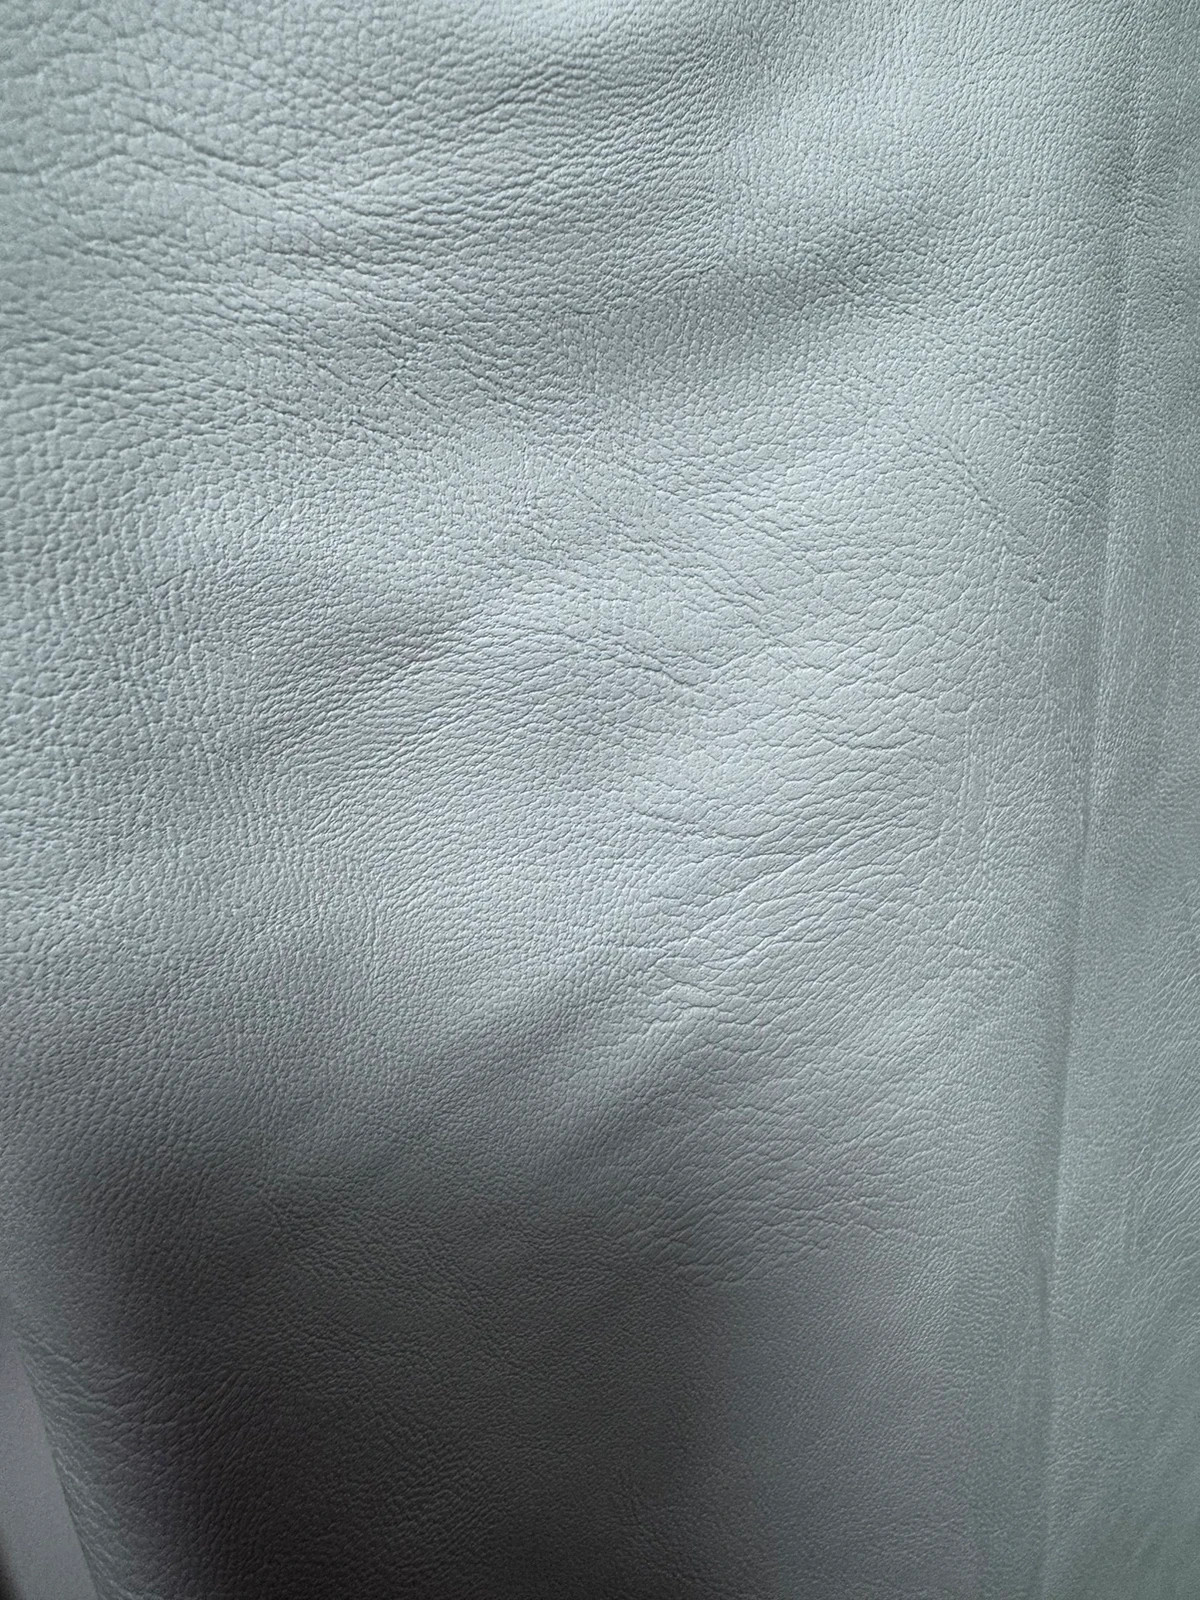 NarzutaSkóra ekologiczna materiał tkanina biała